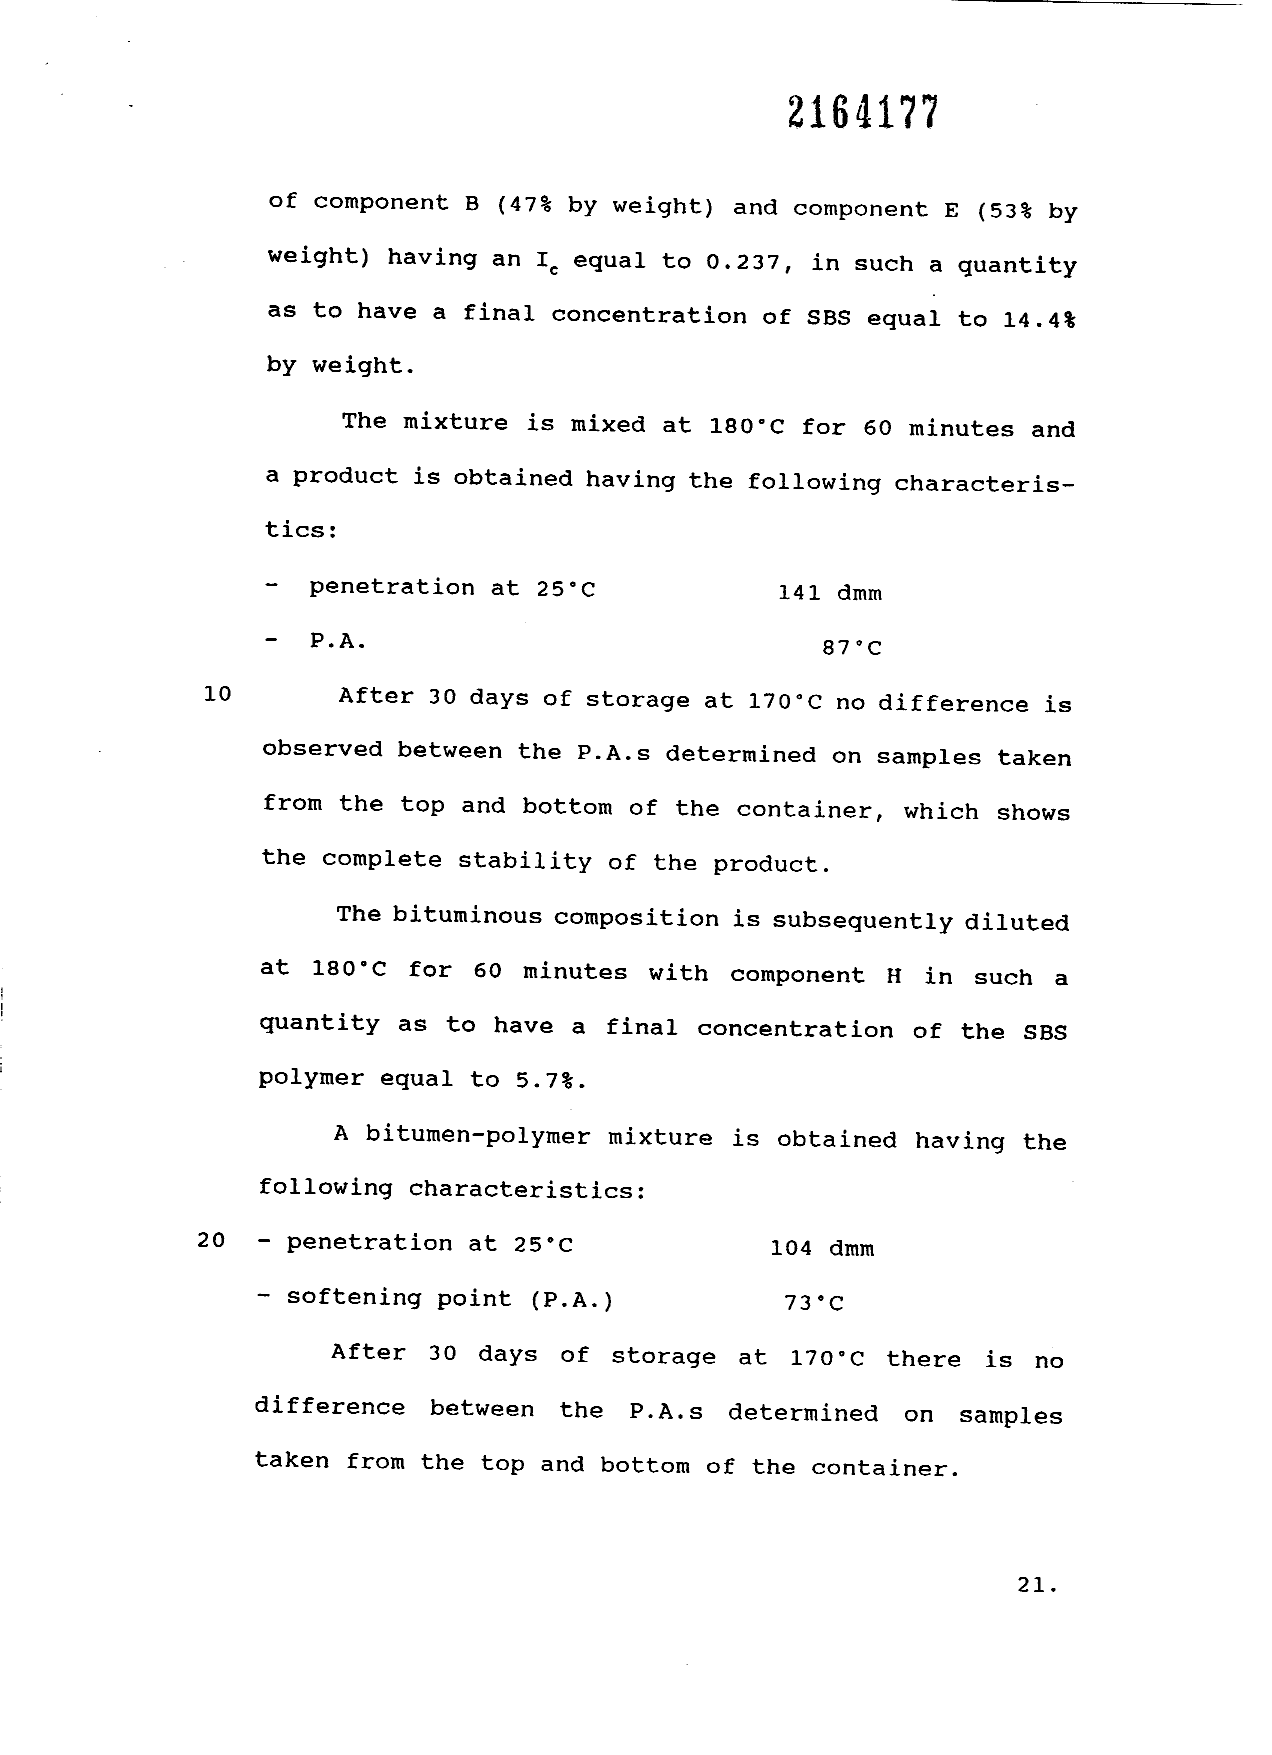 Canadian Patent Document 2164177. Description 19951130. Image 21 of 21